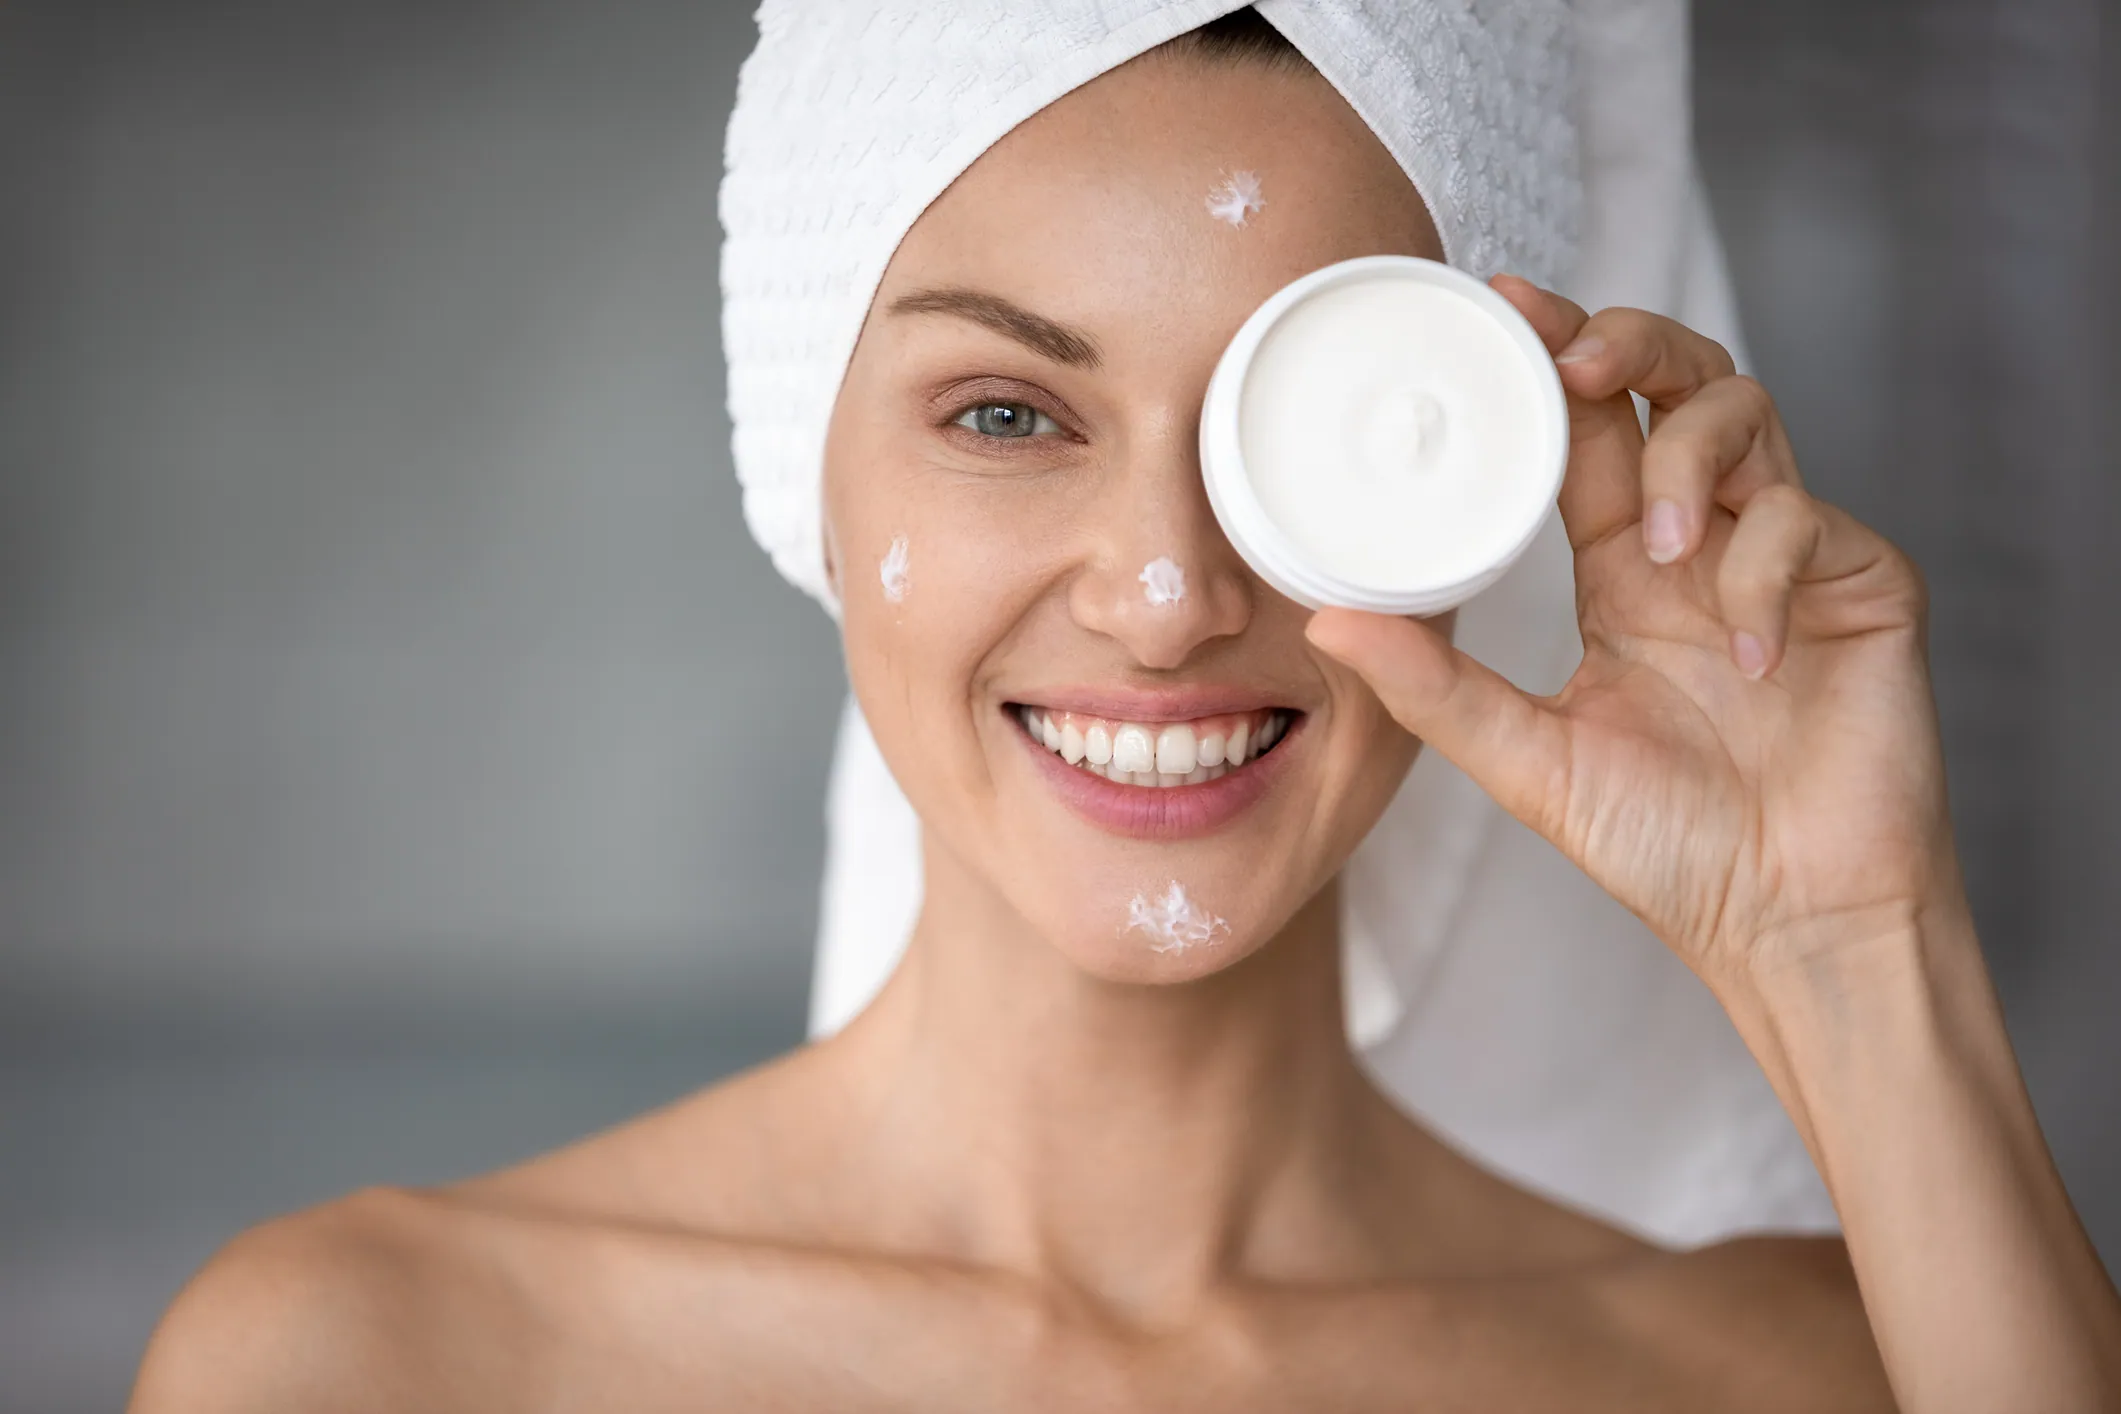 Crema facial rica en péptidos y ácido hialurónico, ideal para hidratar y revitalizar la piel